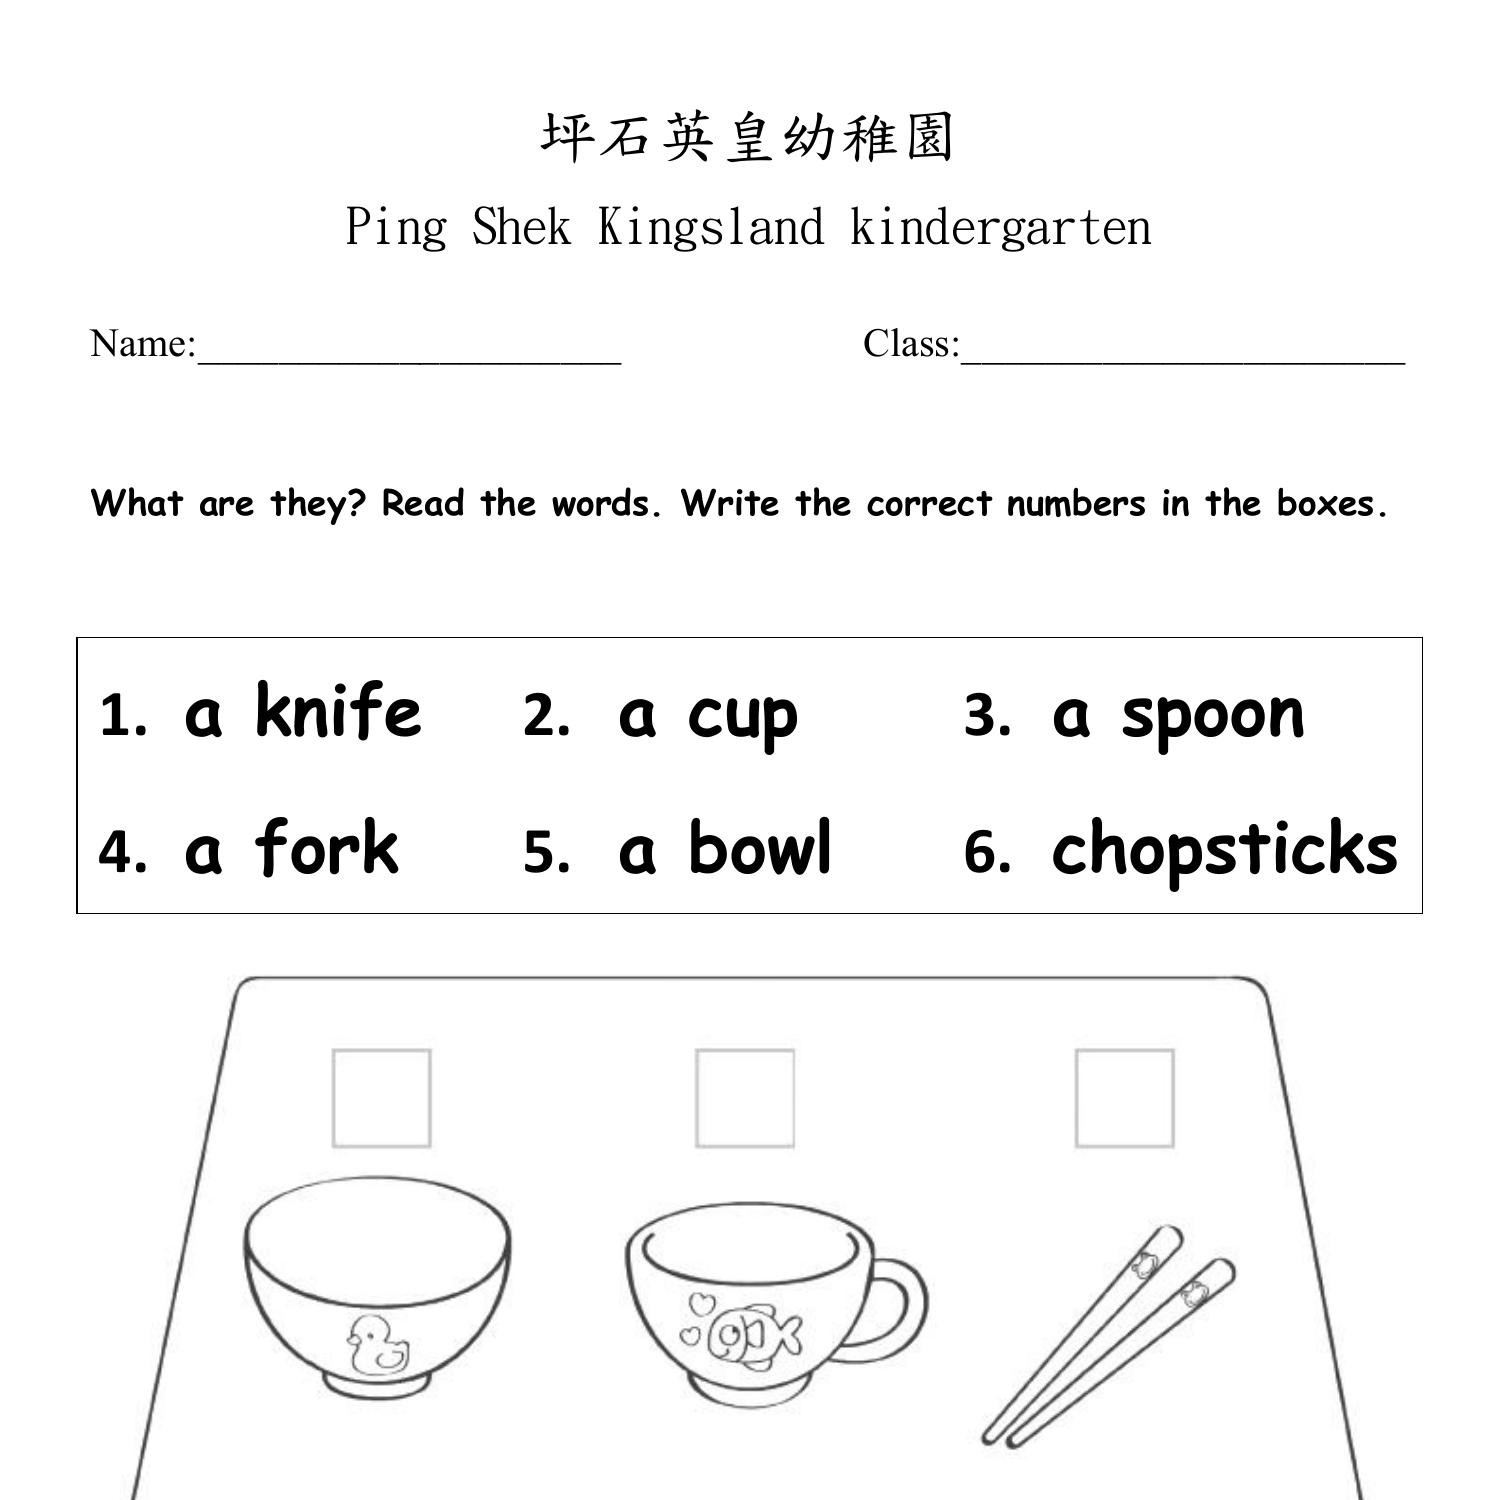 K3 English Worksheet 2 pdf DocDroid